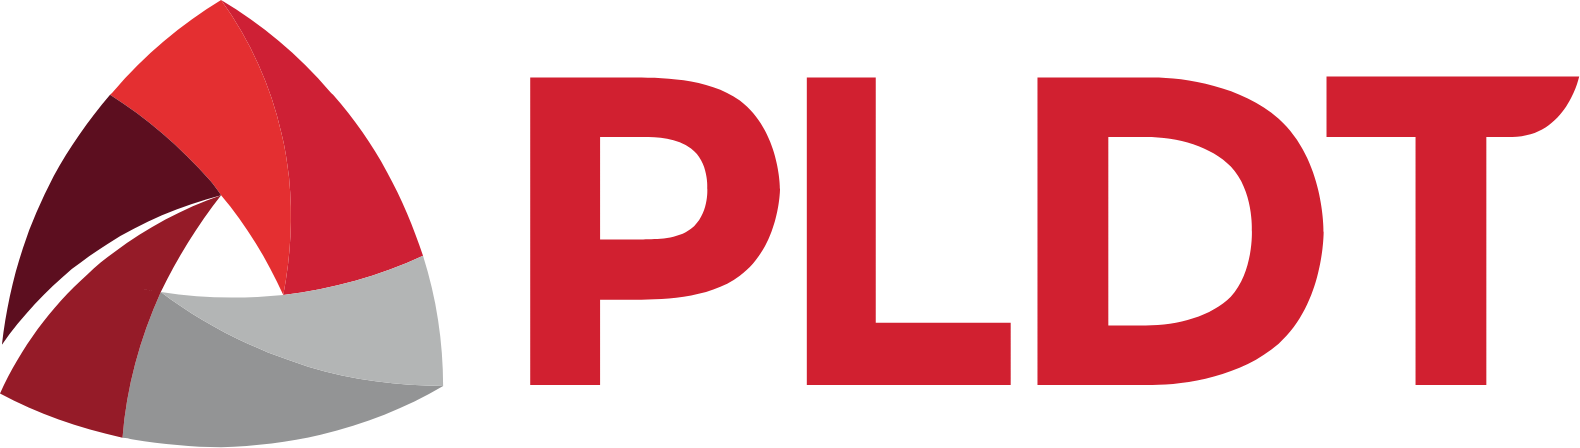 PLDT logo large (transparent PNG)